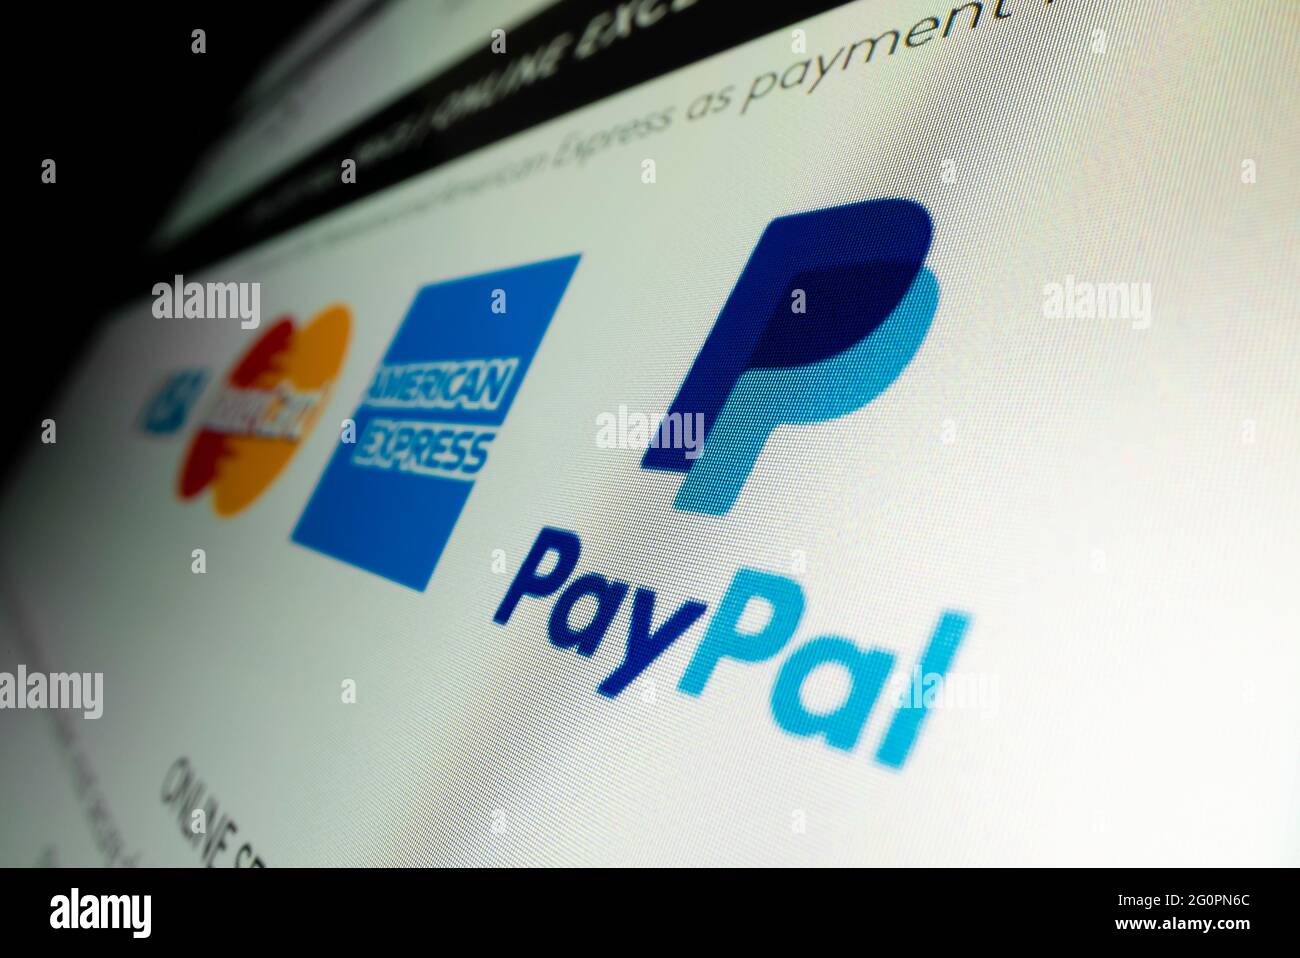 Vista ravvicinata del logo Paypal sul sito Web dello shopping online Foto Stock